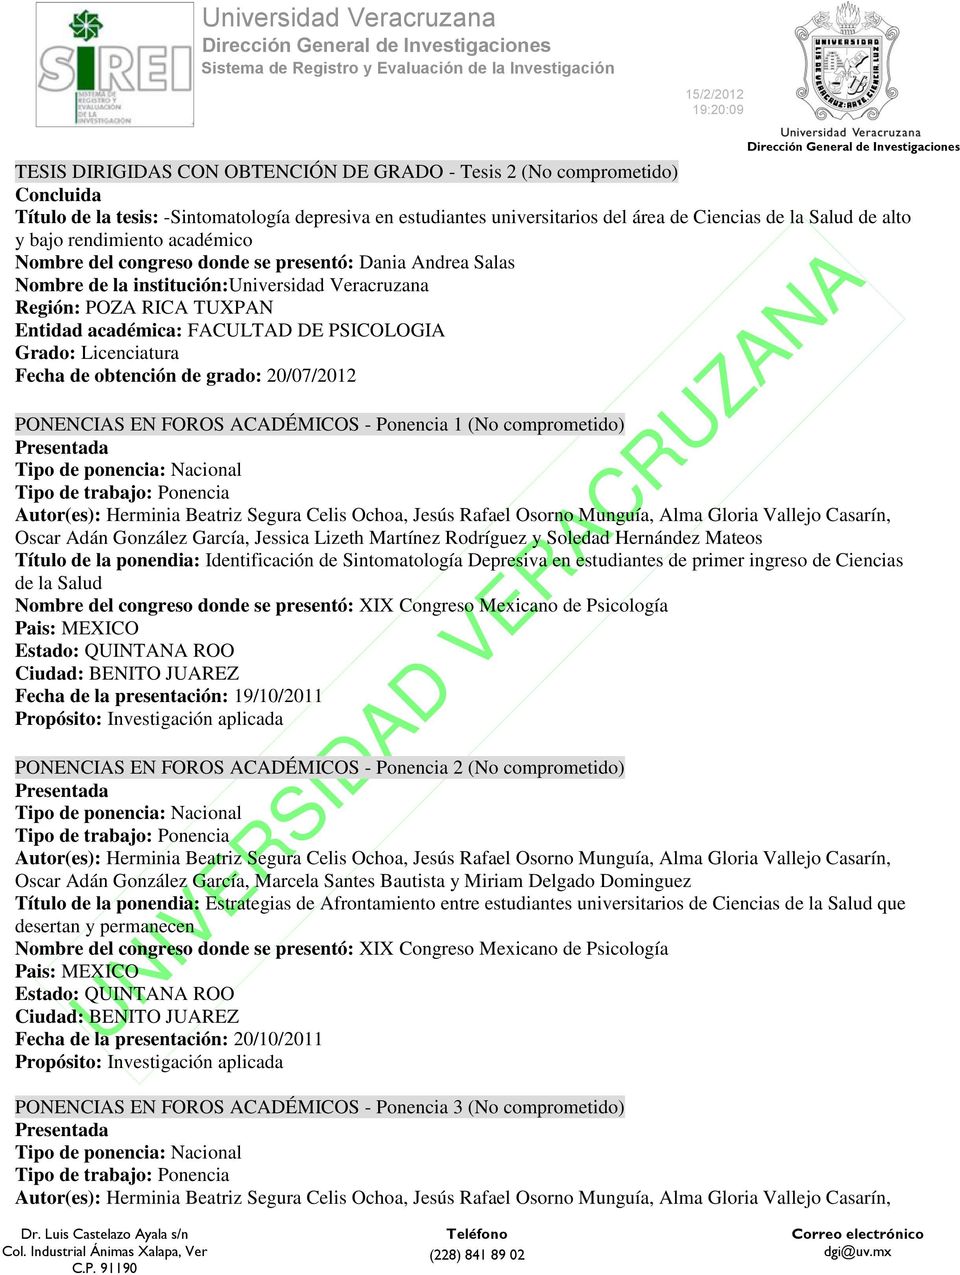 PSICOLOGIA Grado: Licenciatura Fecha de obtención de grado: 20/07/2012 PONENCIAS EN FOROS ACADÉMICOS - Ponencia 1 (No comprometido) Tipo de ponencia: Nacional Oscar Adán González García, Jessica